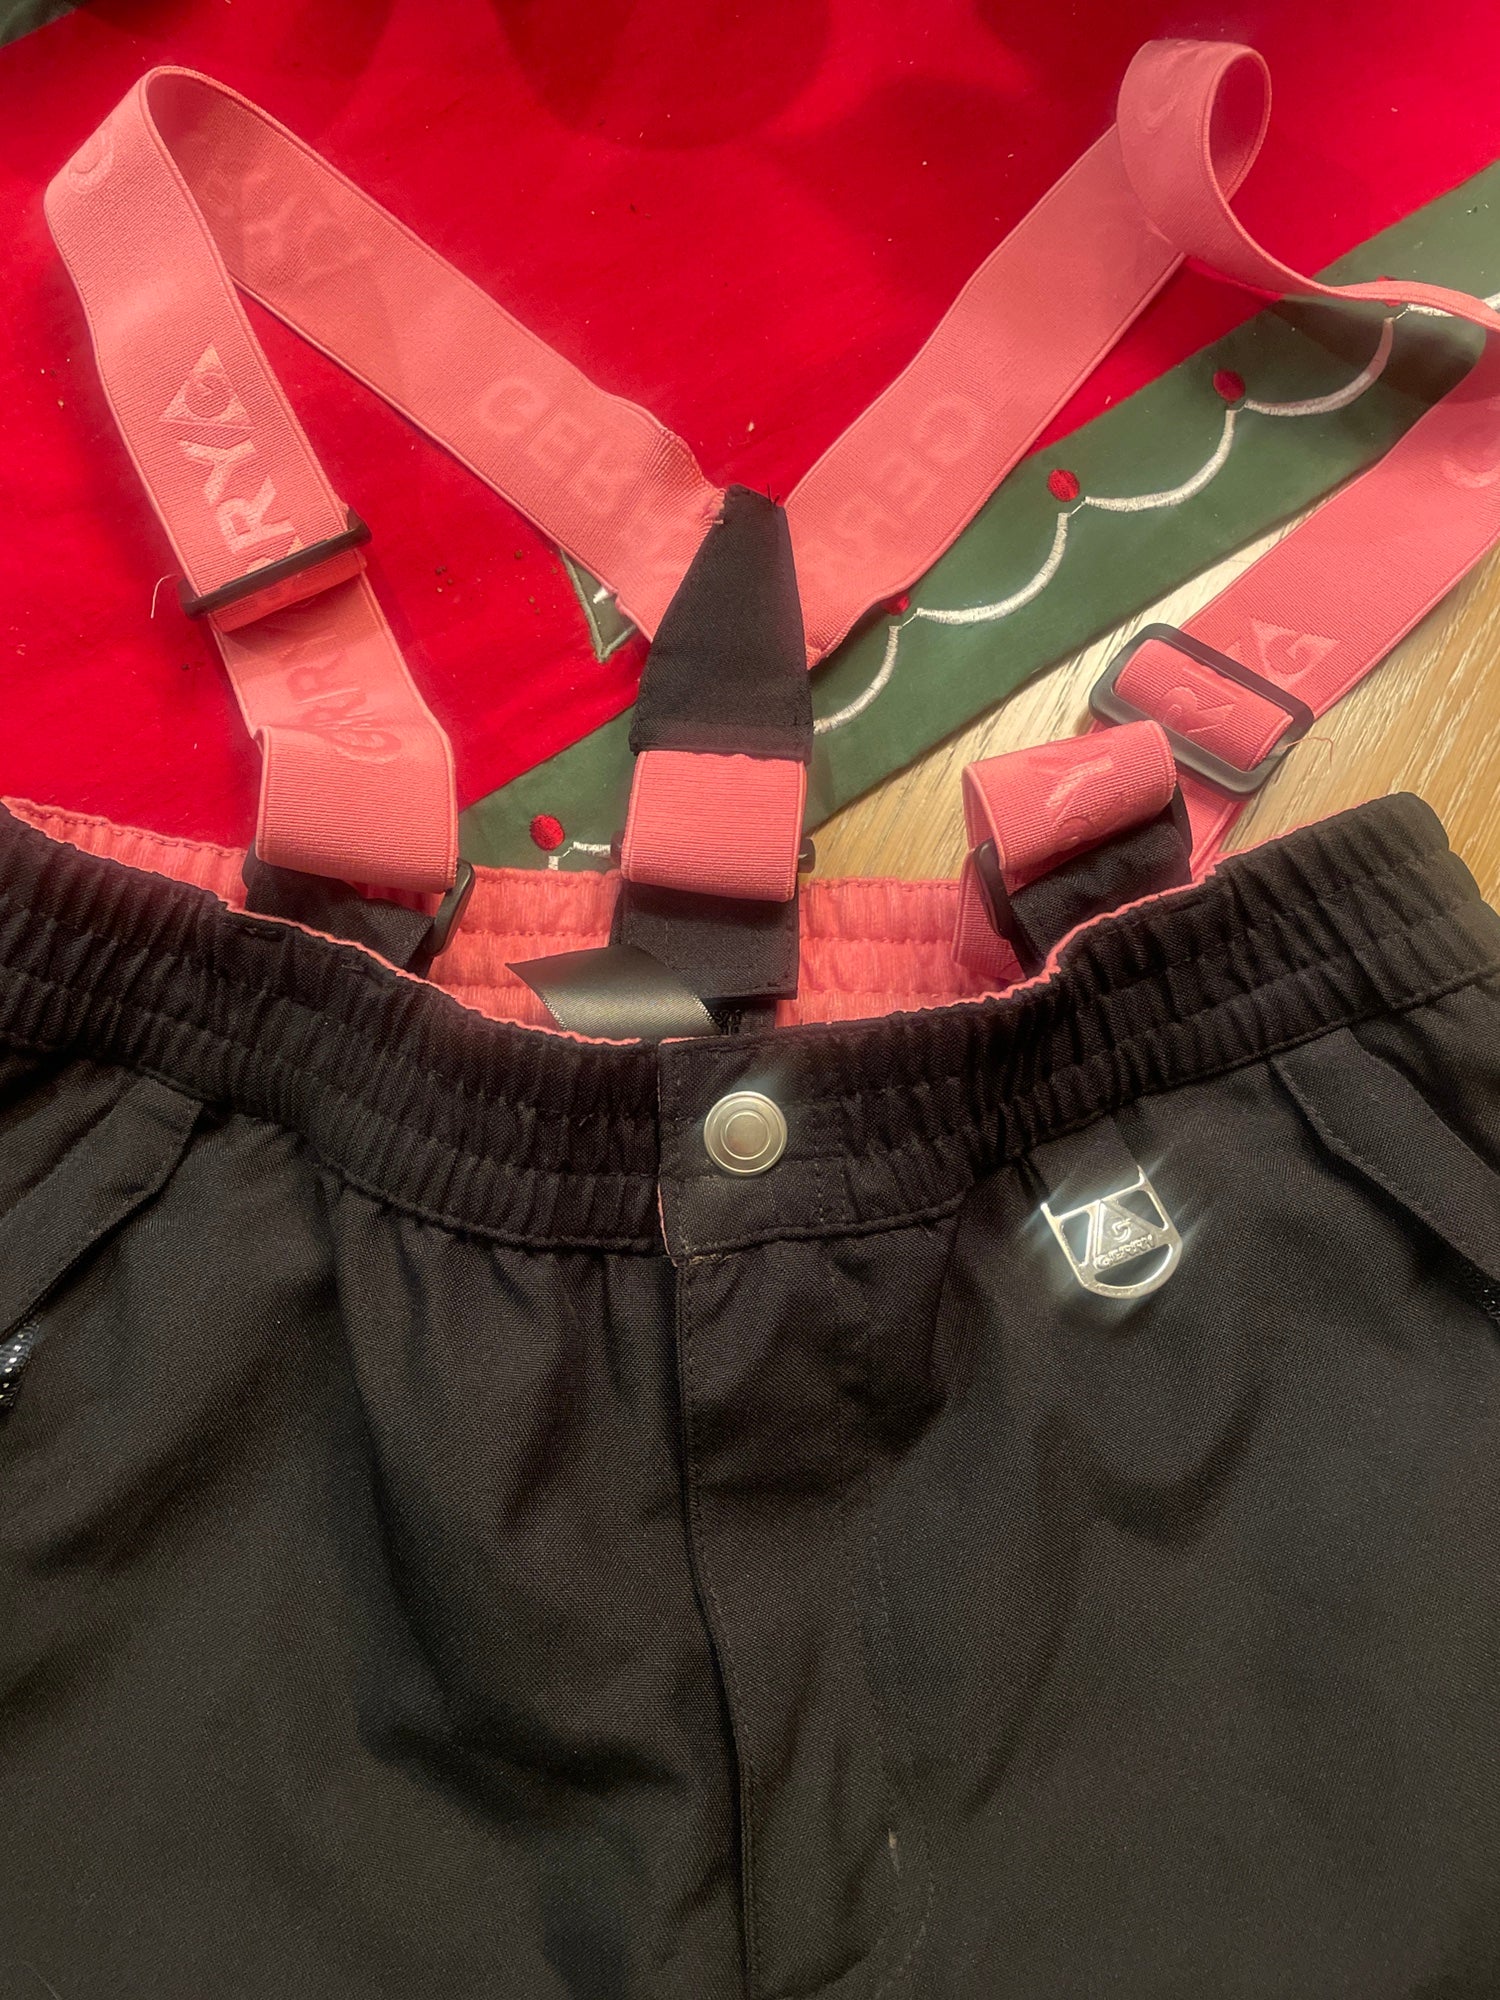 Boys Columbia Ski Pants - Black - Excellent condition - Large (14